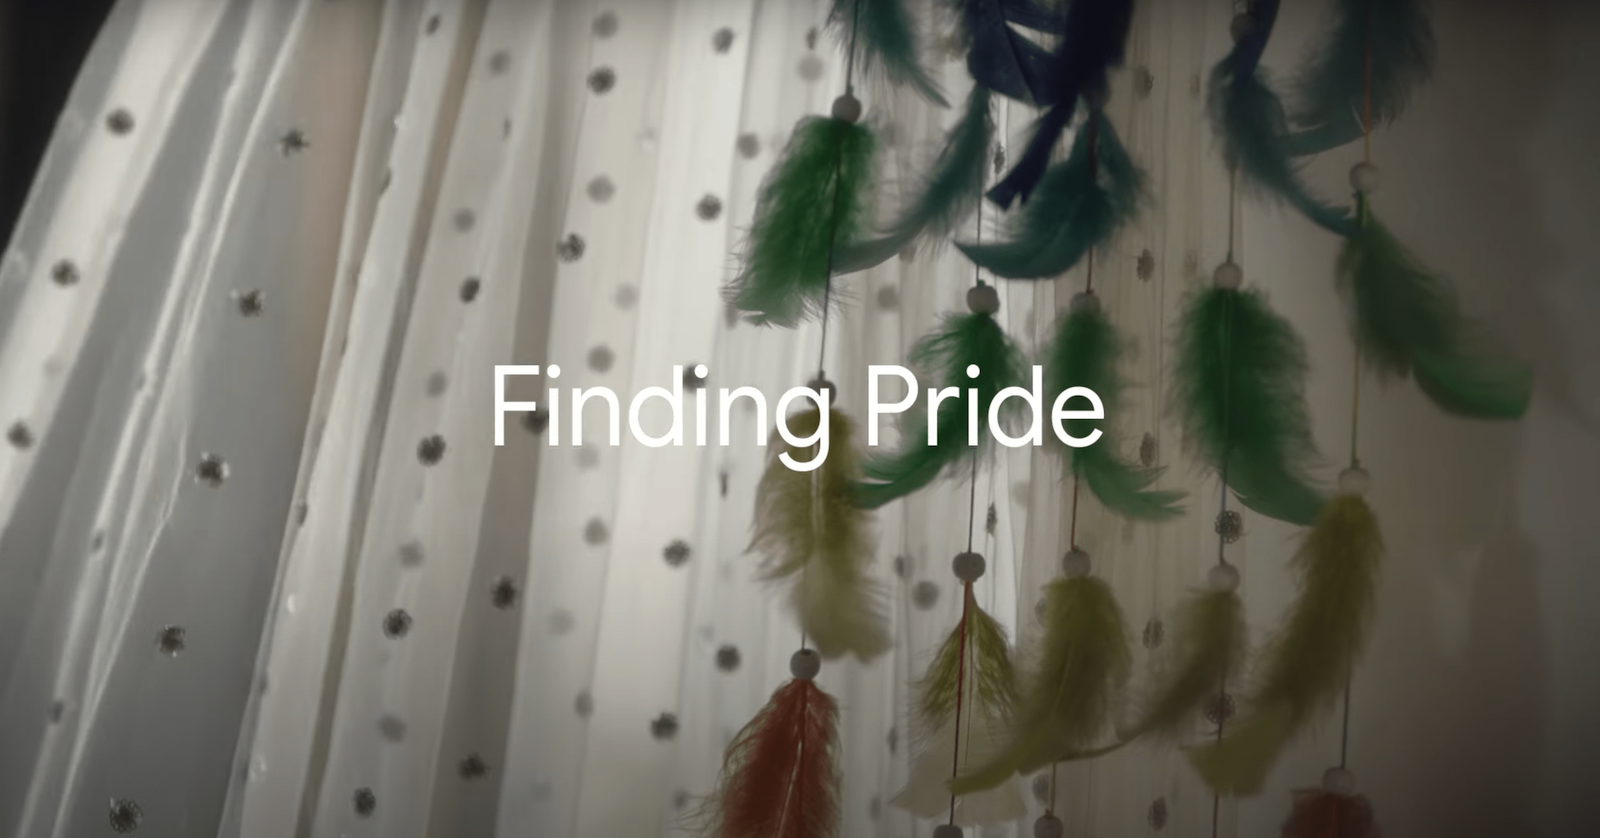 Google finding pride ad campaign